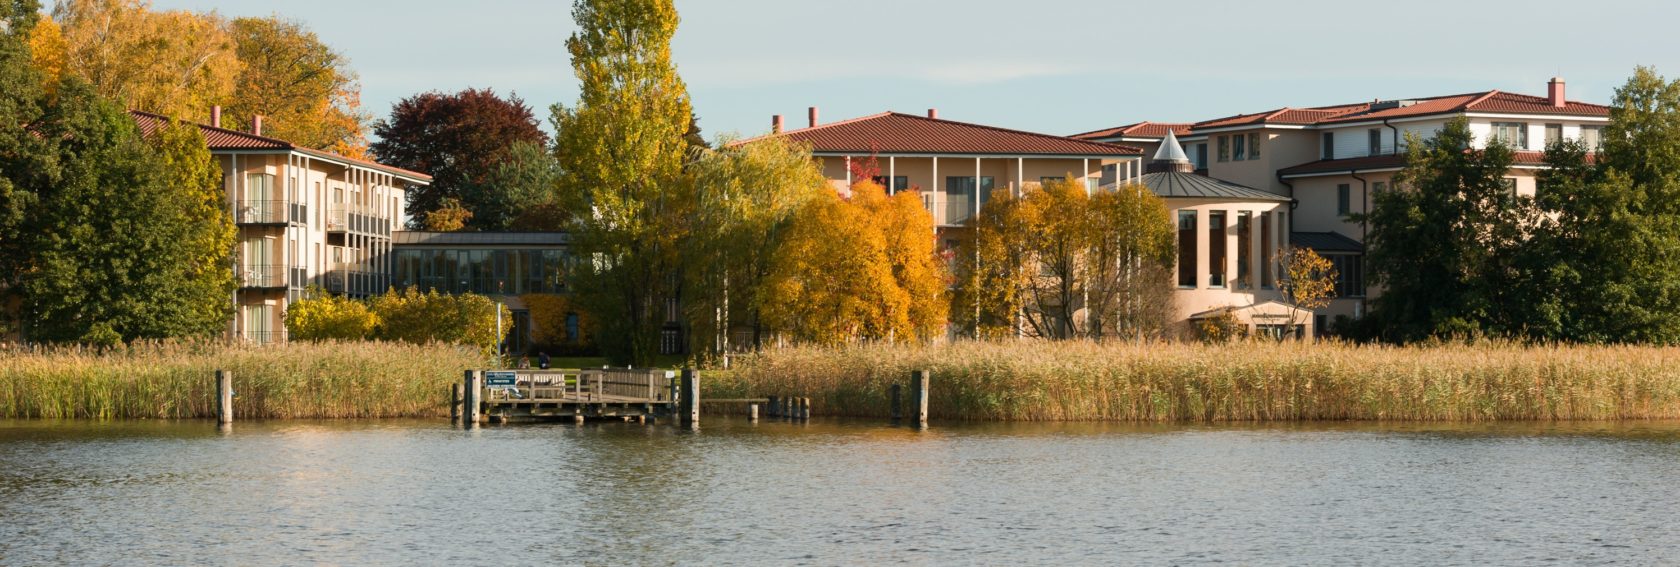 Herbstansicht des Hotels vom See aus